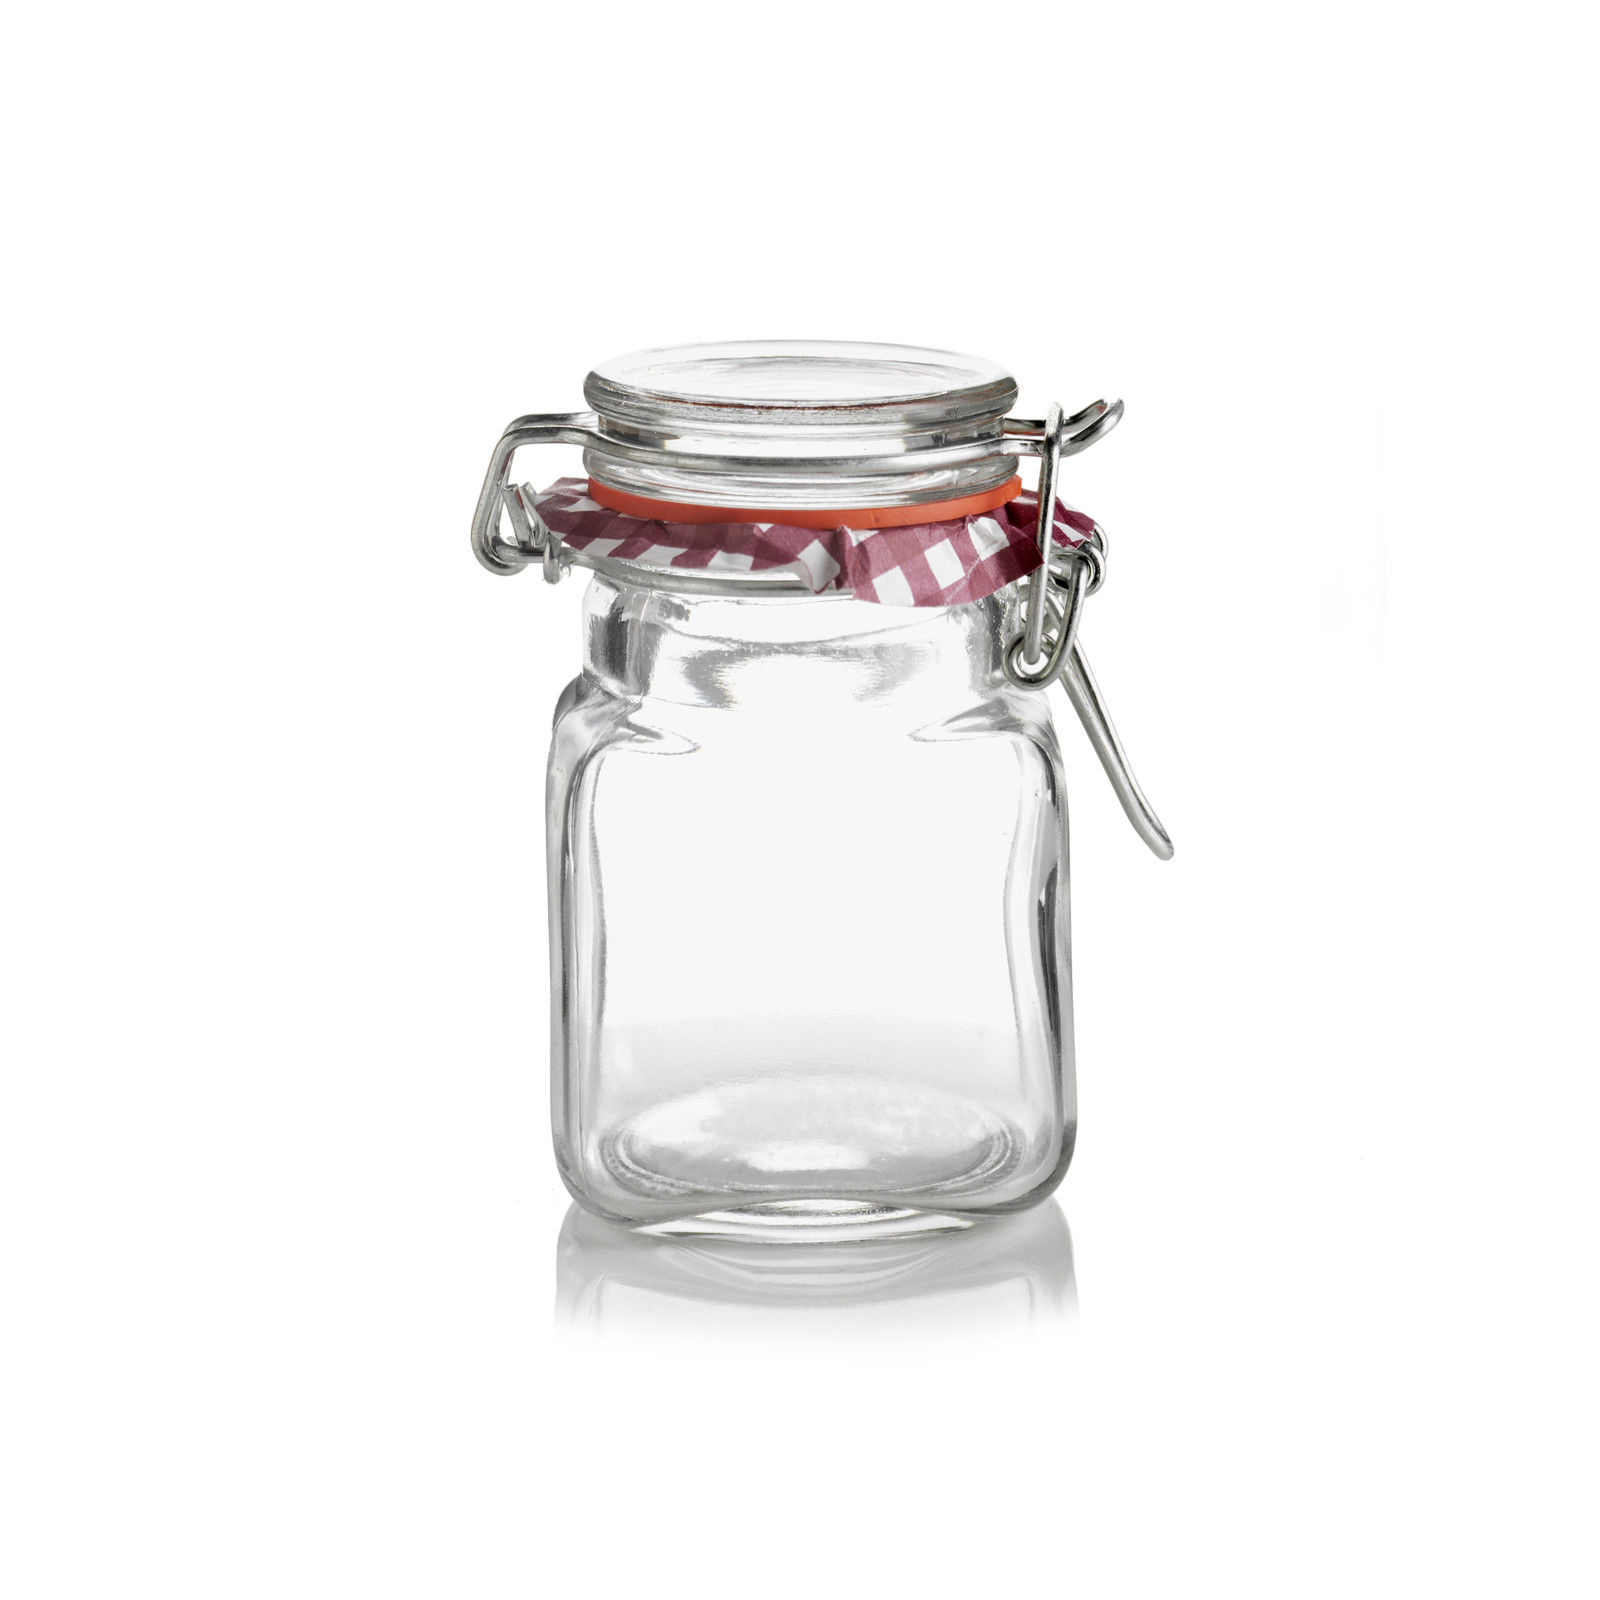 Item Specifics Genuine Kilner Mini Jar Square Glass Clip Top Mini Jar